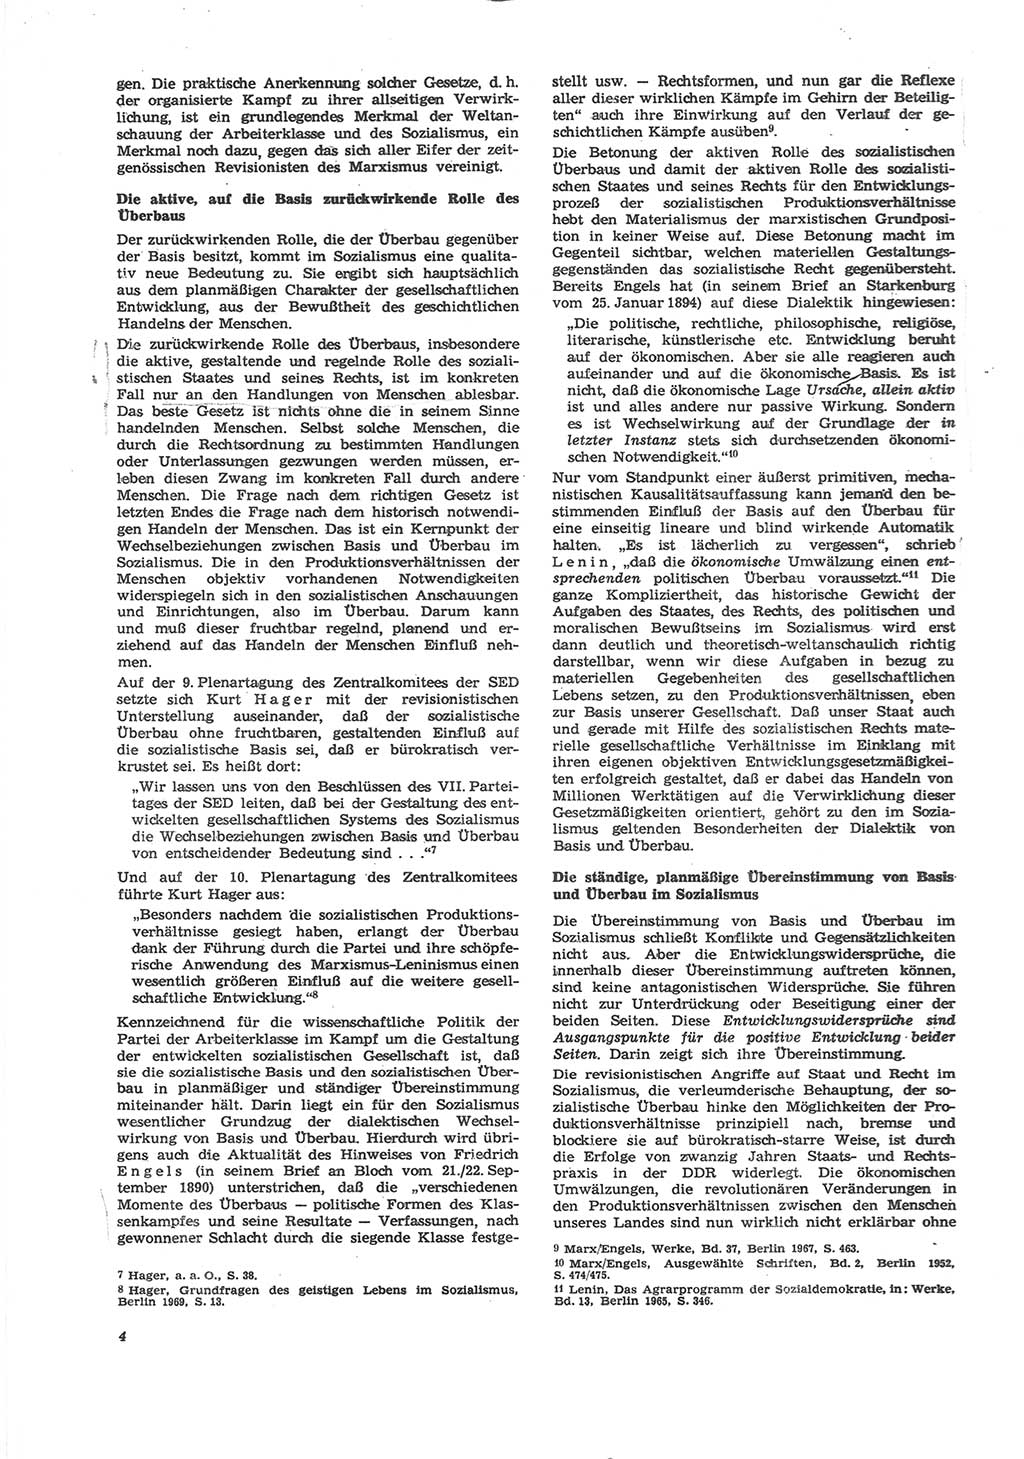 Neue Justiz (NJ), Zeitschrift für Recht und Rechtswissenschaft [Deutsche Demokratische Republik (DDR)], 24. Jahrgang 1970, Seite 4 (NJ DDR 1970, S. 4)